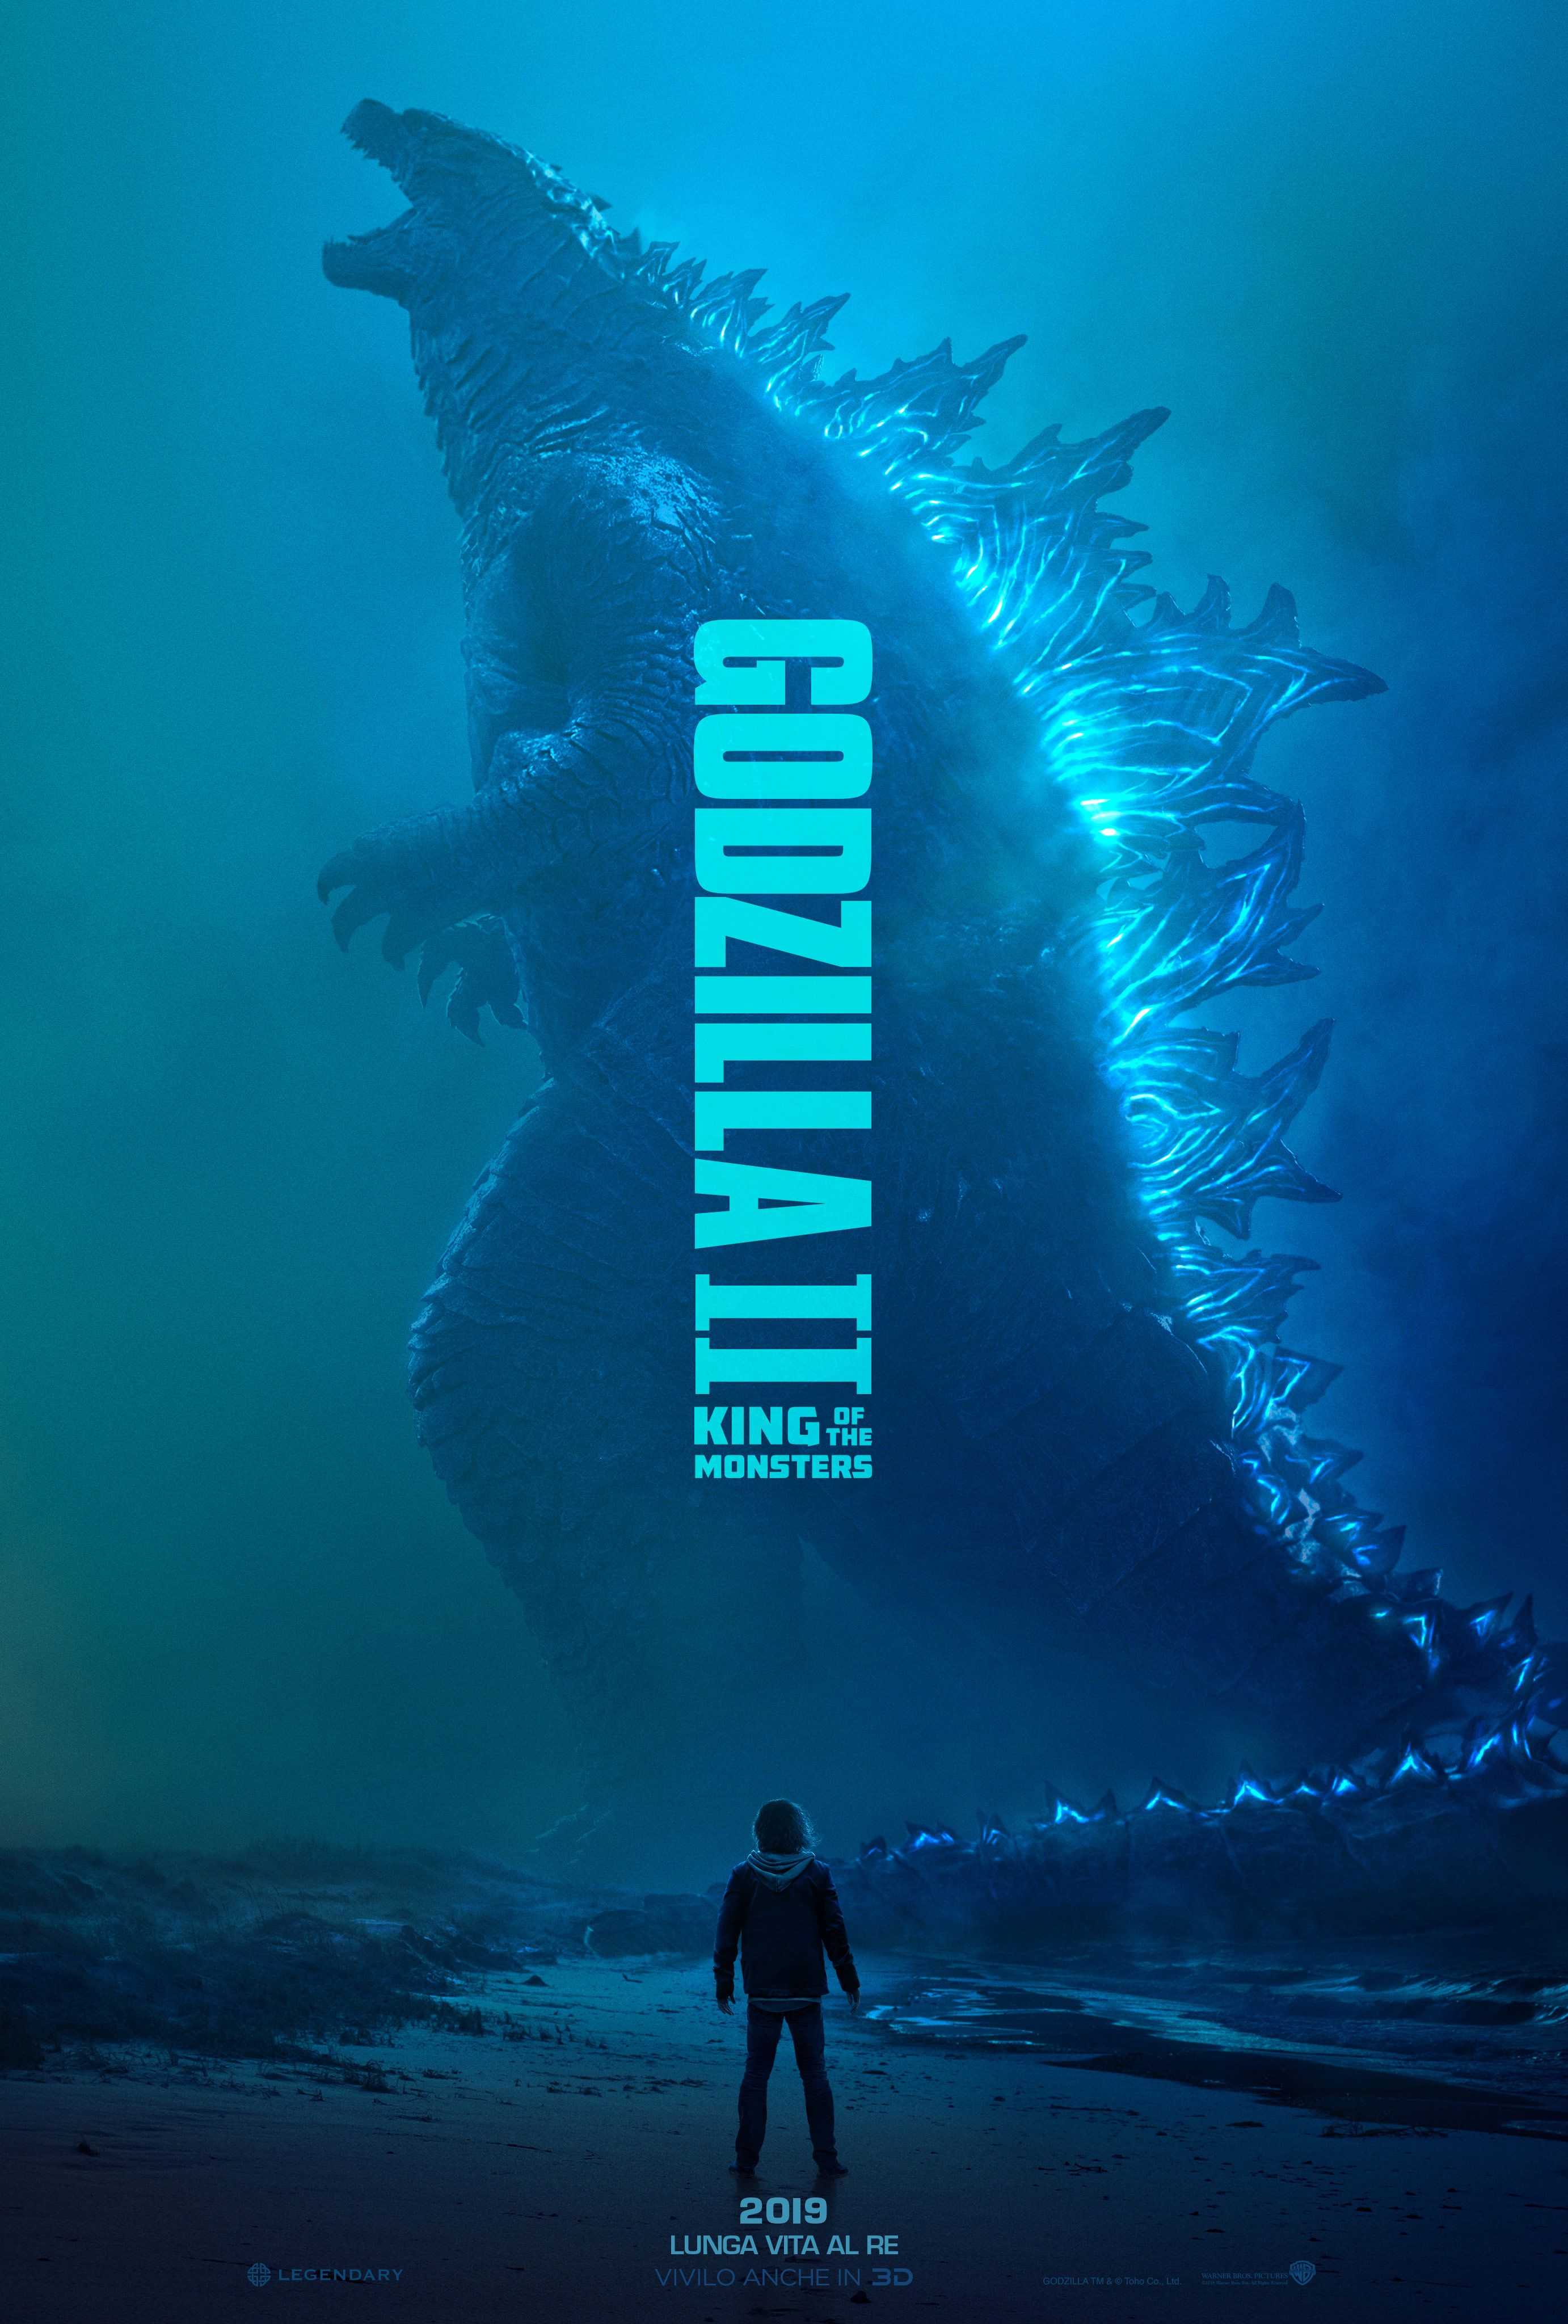 Godzilla 2019 Wallpaper Free Godzilla 2019 Background